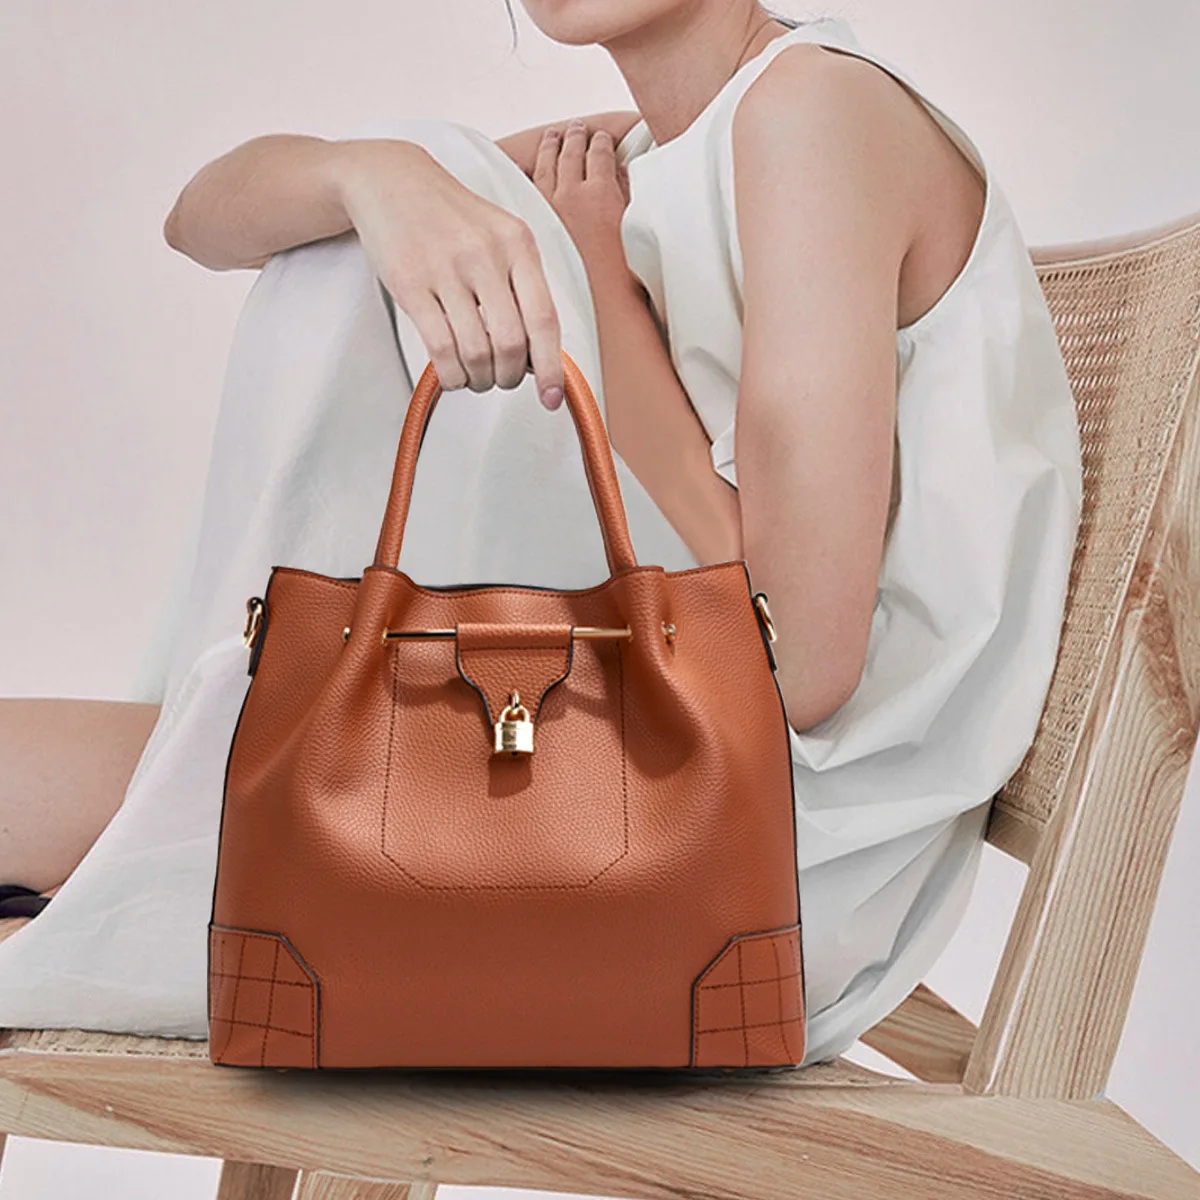 

Деловая сумка-тоут из натуральной кожи, вместительный саквояж на плечо, дамская сумочка в офисном стиле, кошельки и сумочки